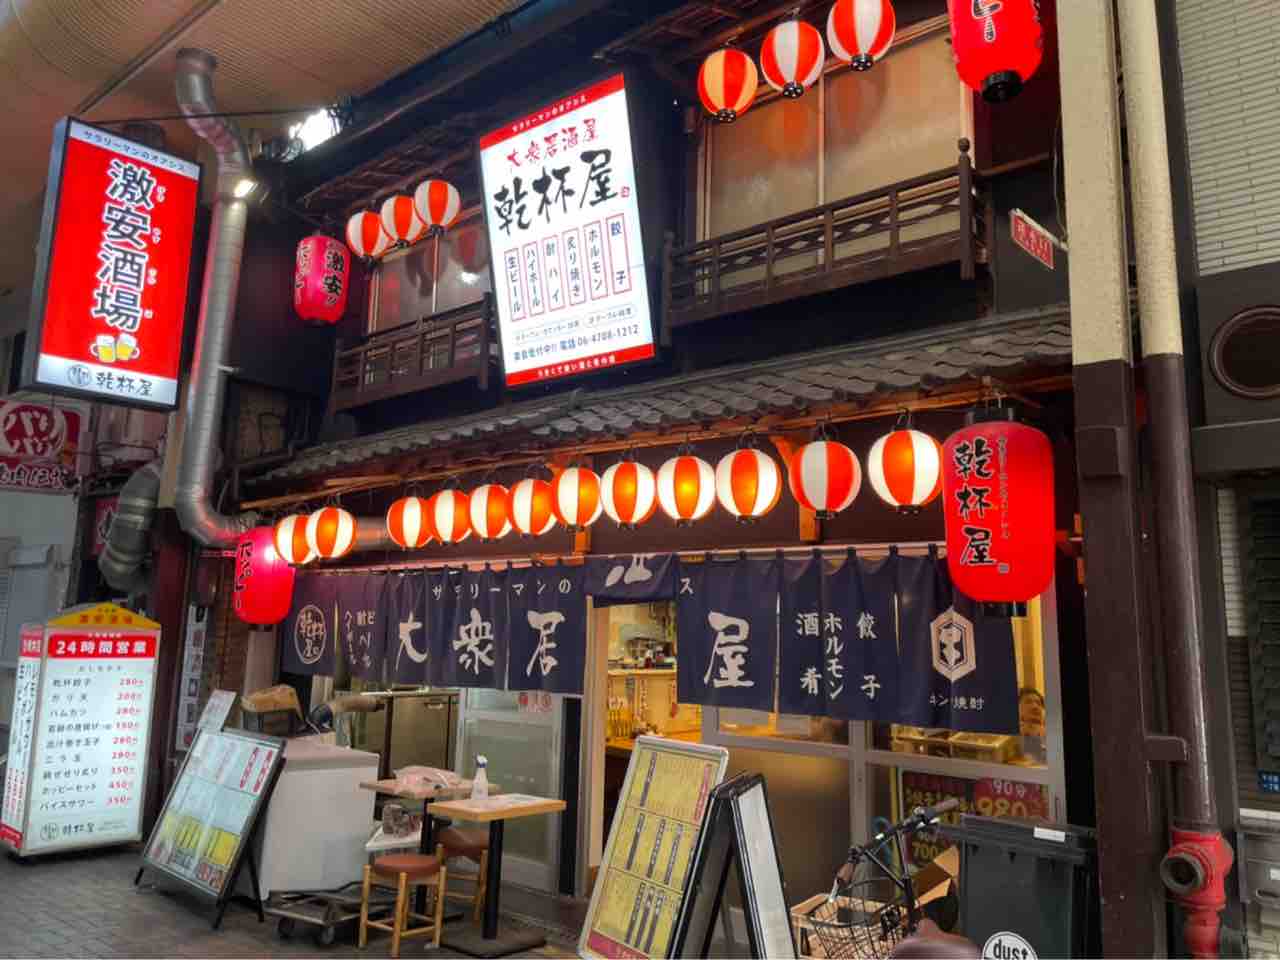 青い暖簾に赤提灯 大阪 日本橋にある 乾杯屋 で味わう大衆居酒屋気分 大阪つーしん 大阪市の地域情報サイト